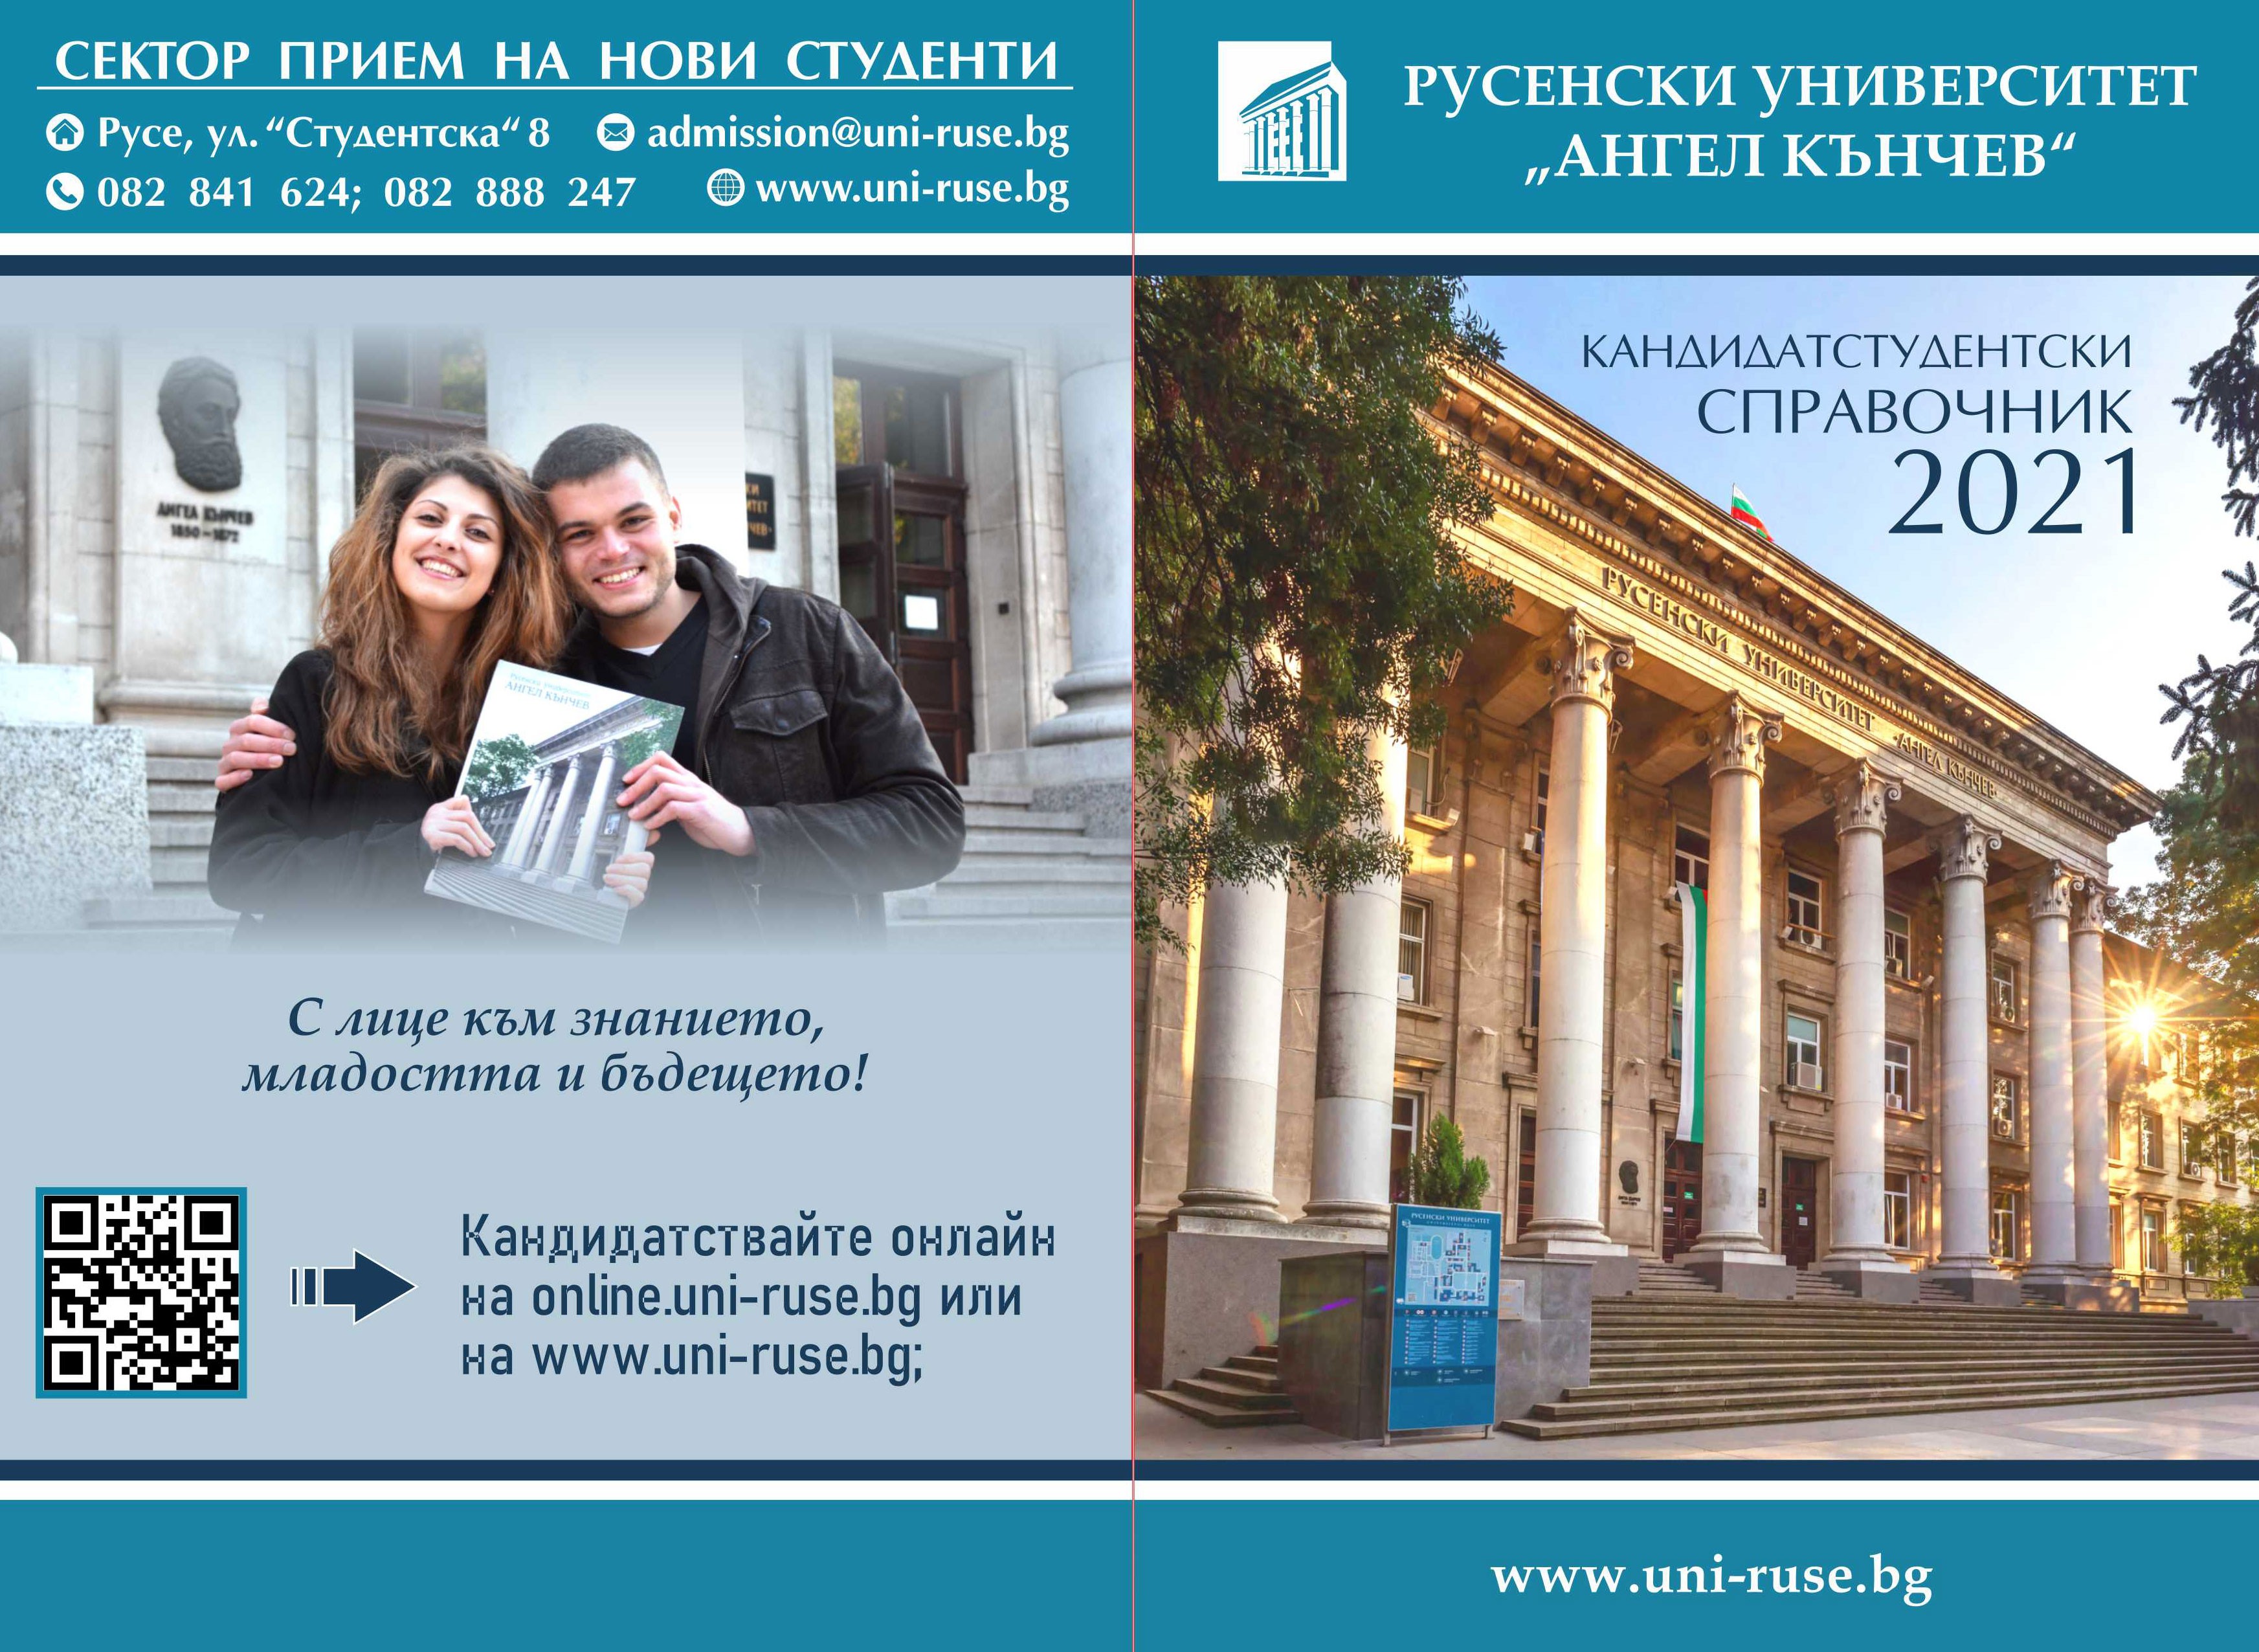 На 23 януари е първата възможност за кандидатстване в Русенския университет за академичната 2021/2022 година